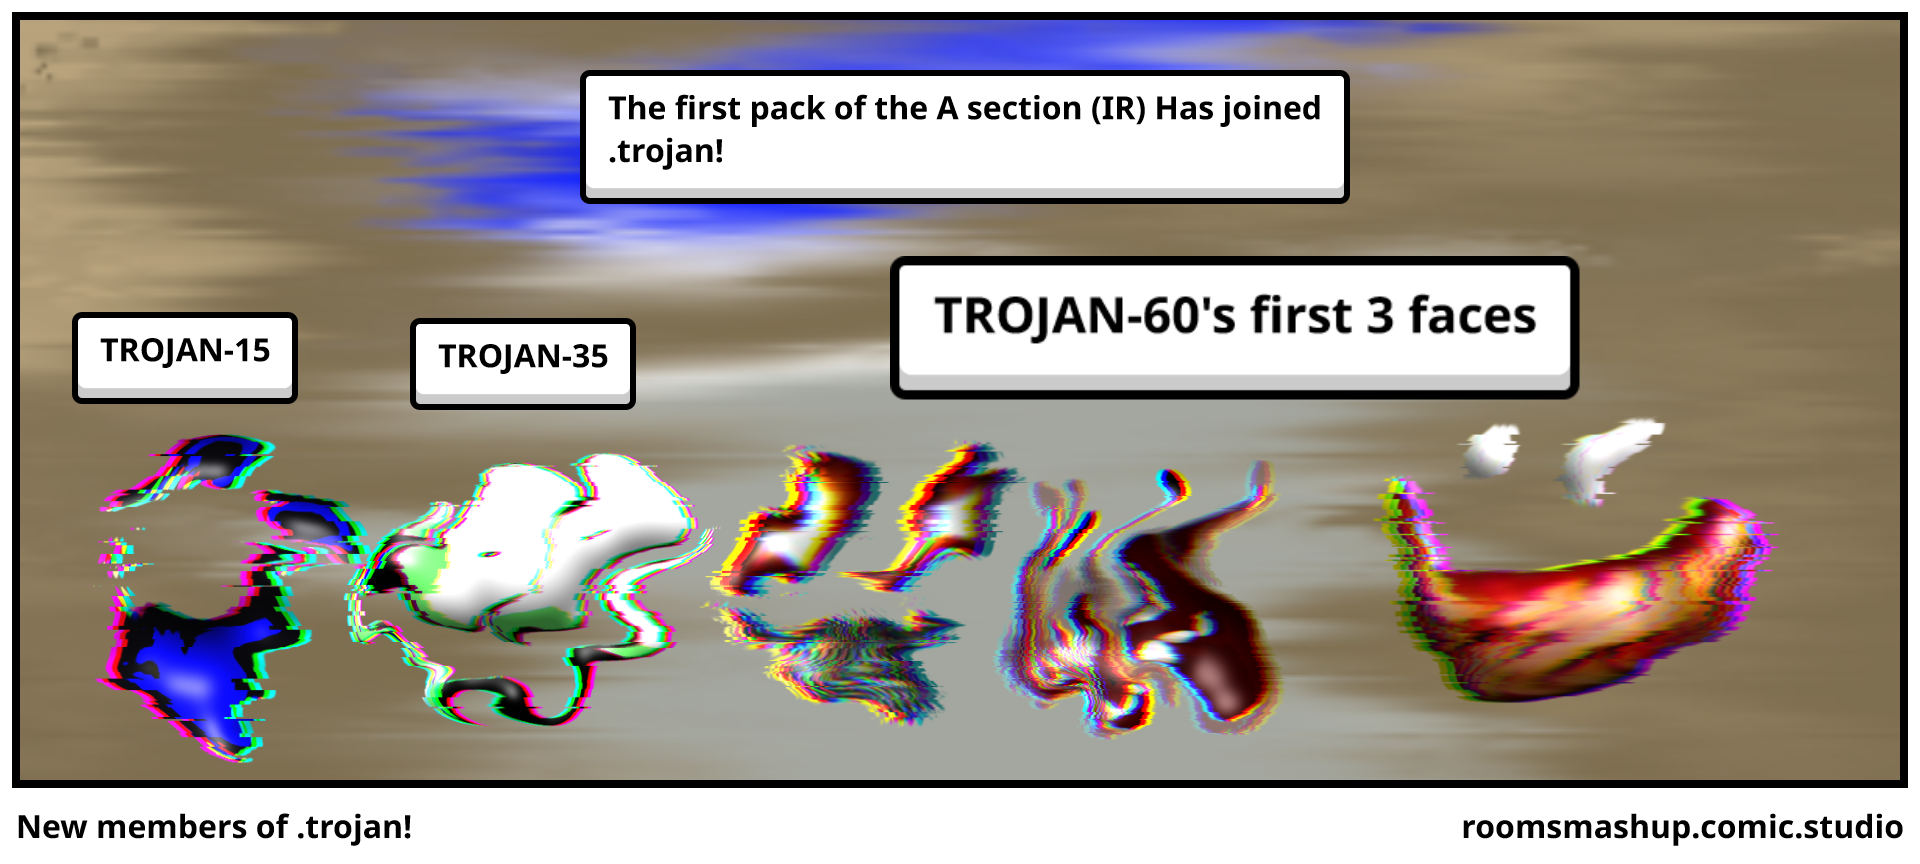 New members of .trojan!